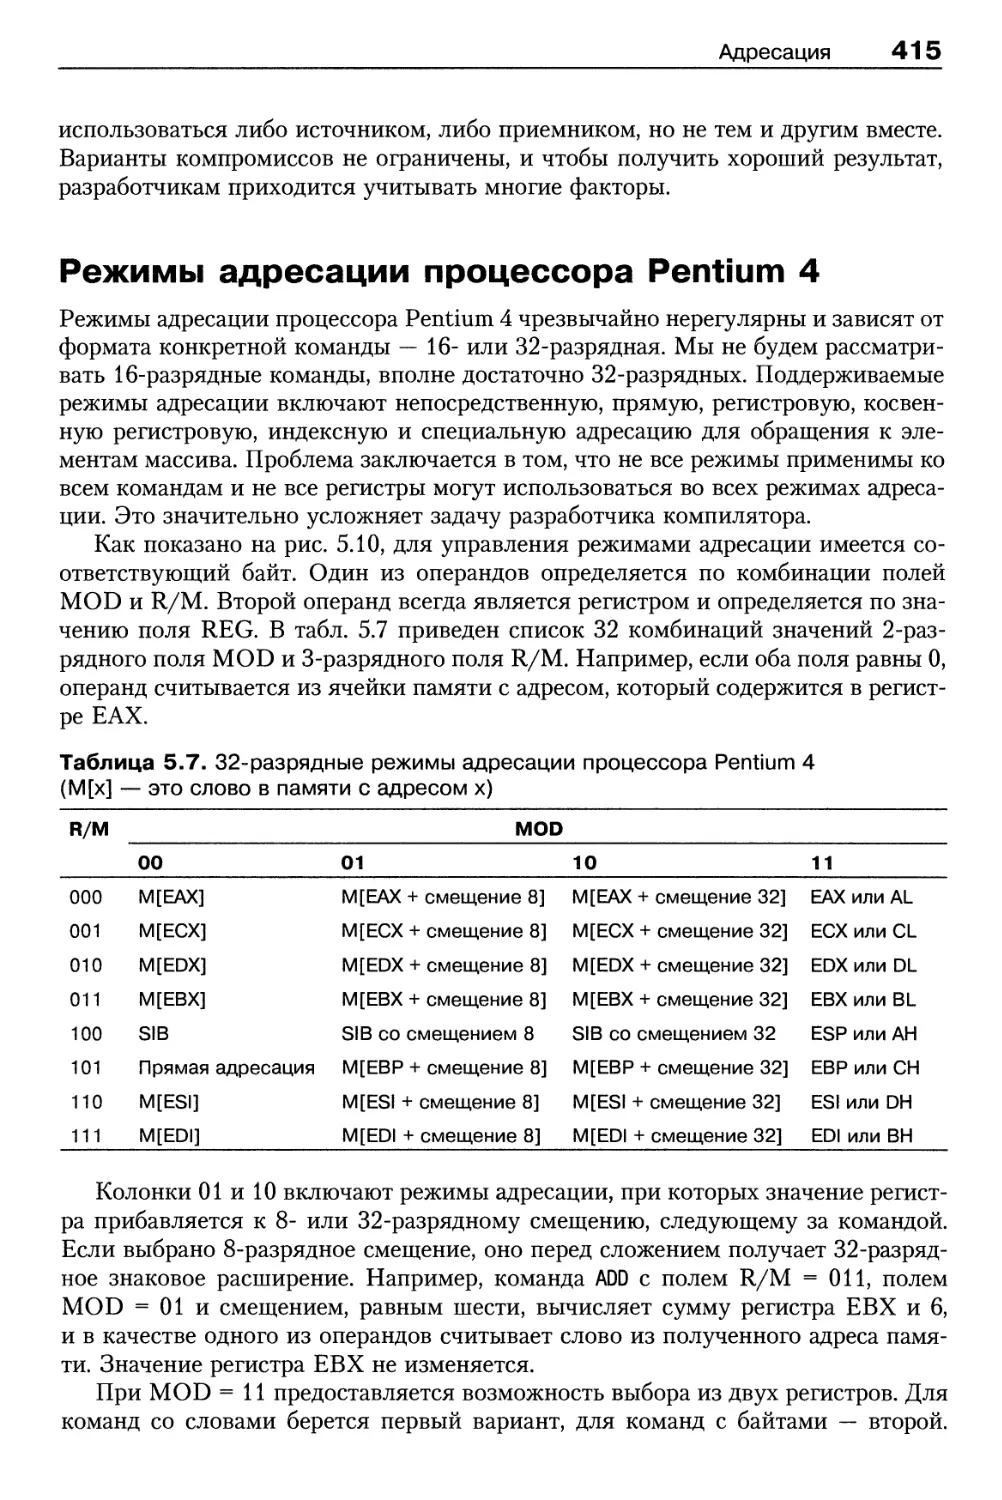 Режимы адресации процессора Pentium 4